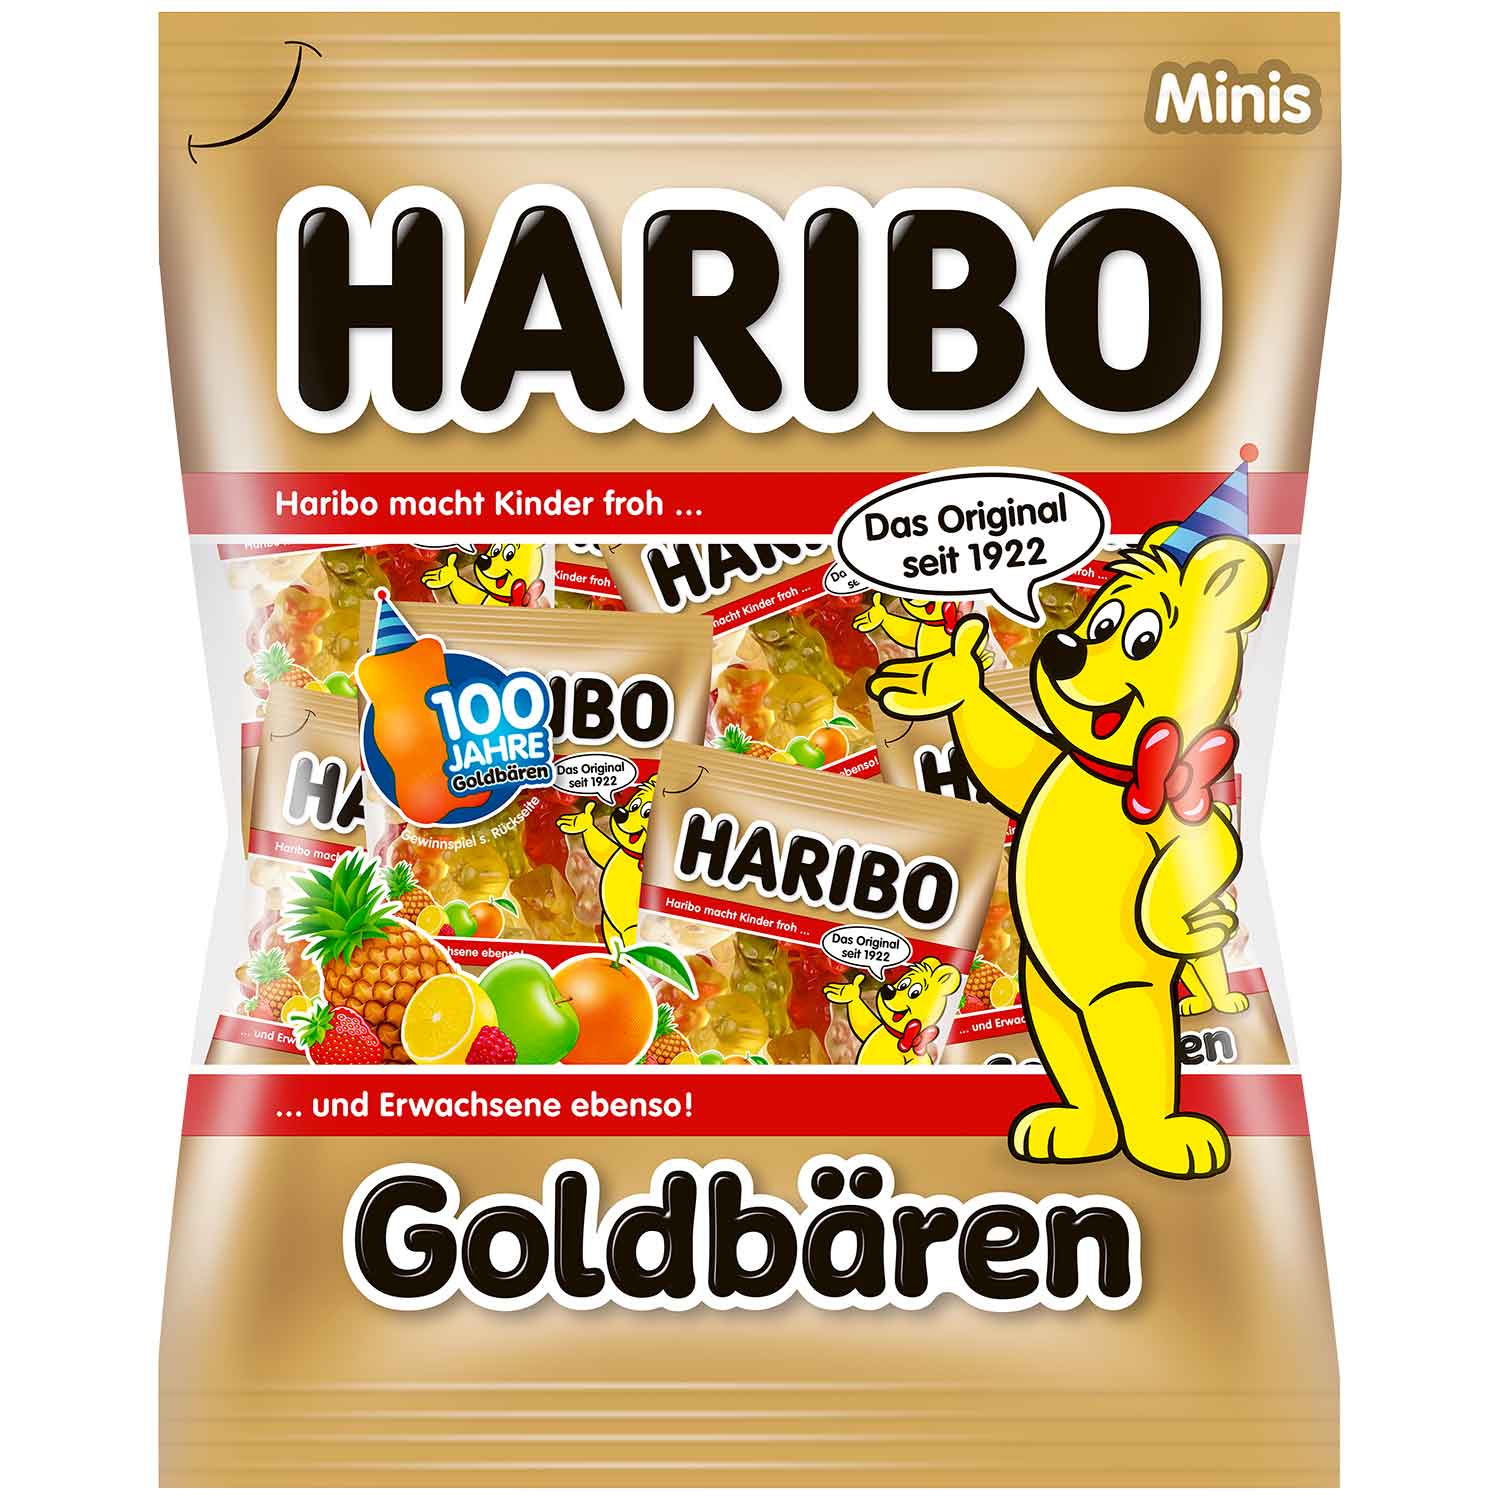 Haribo medvídci Goldbären Minis 20 ks, 250g